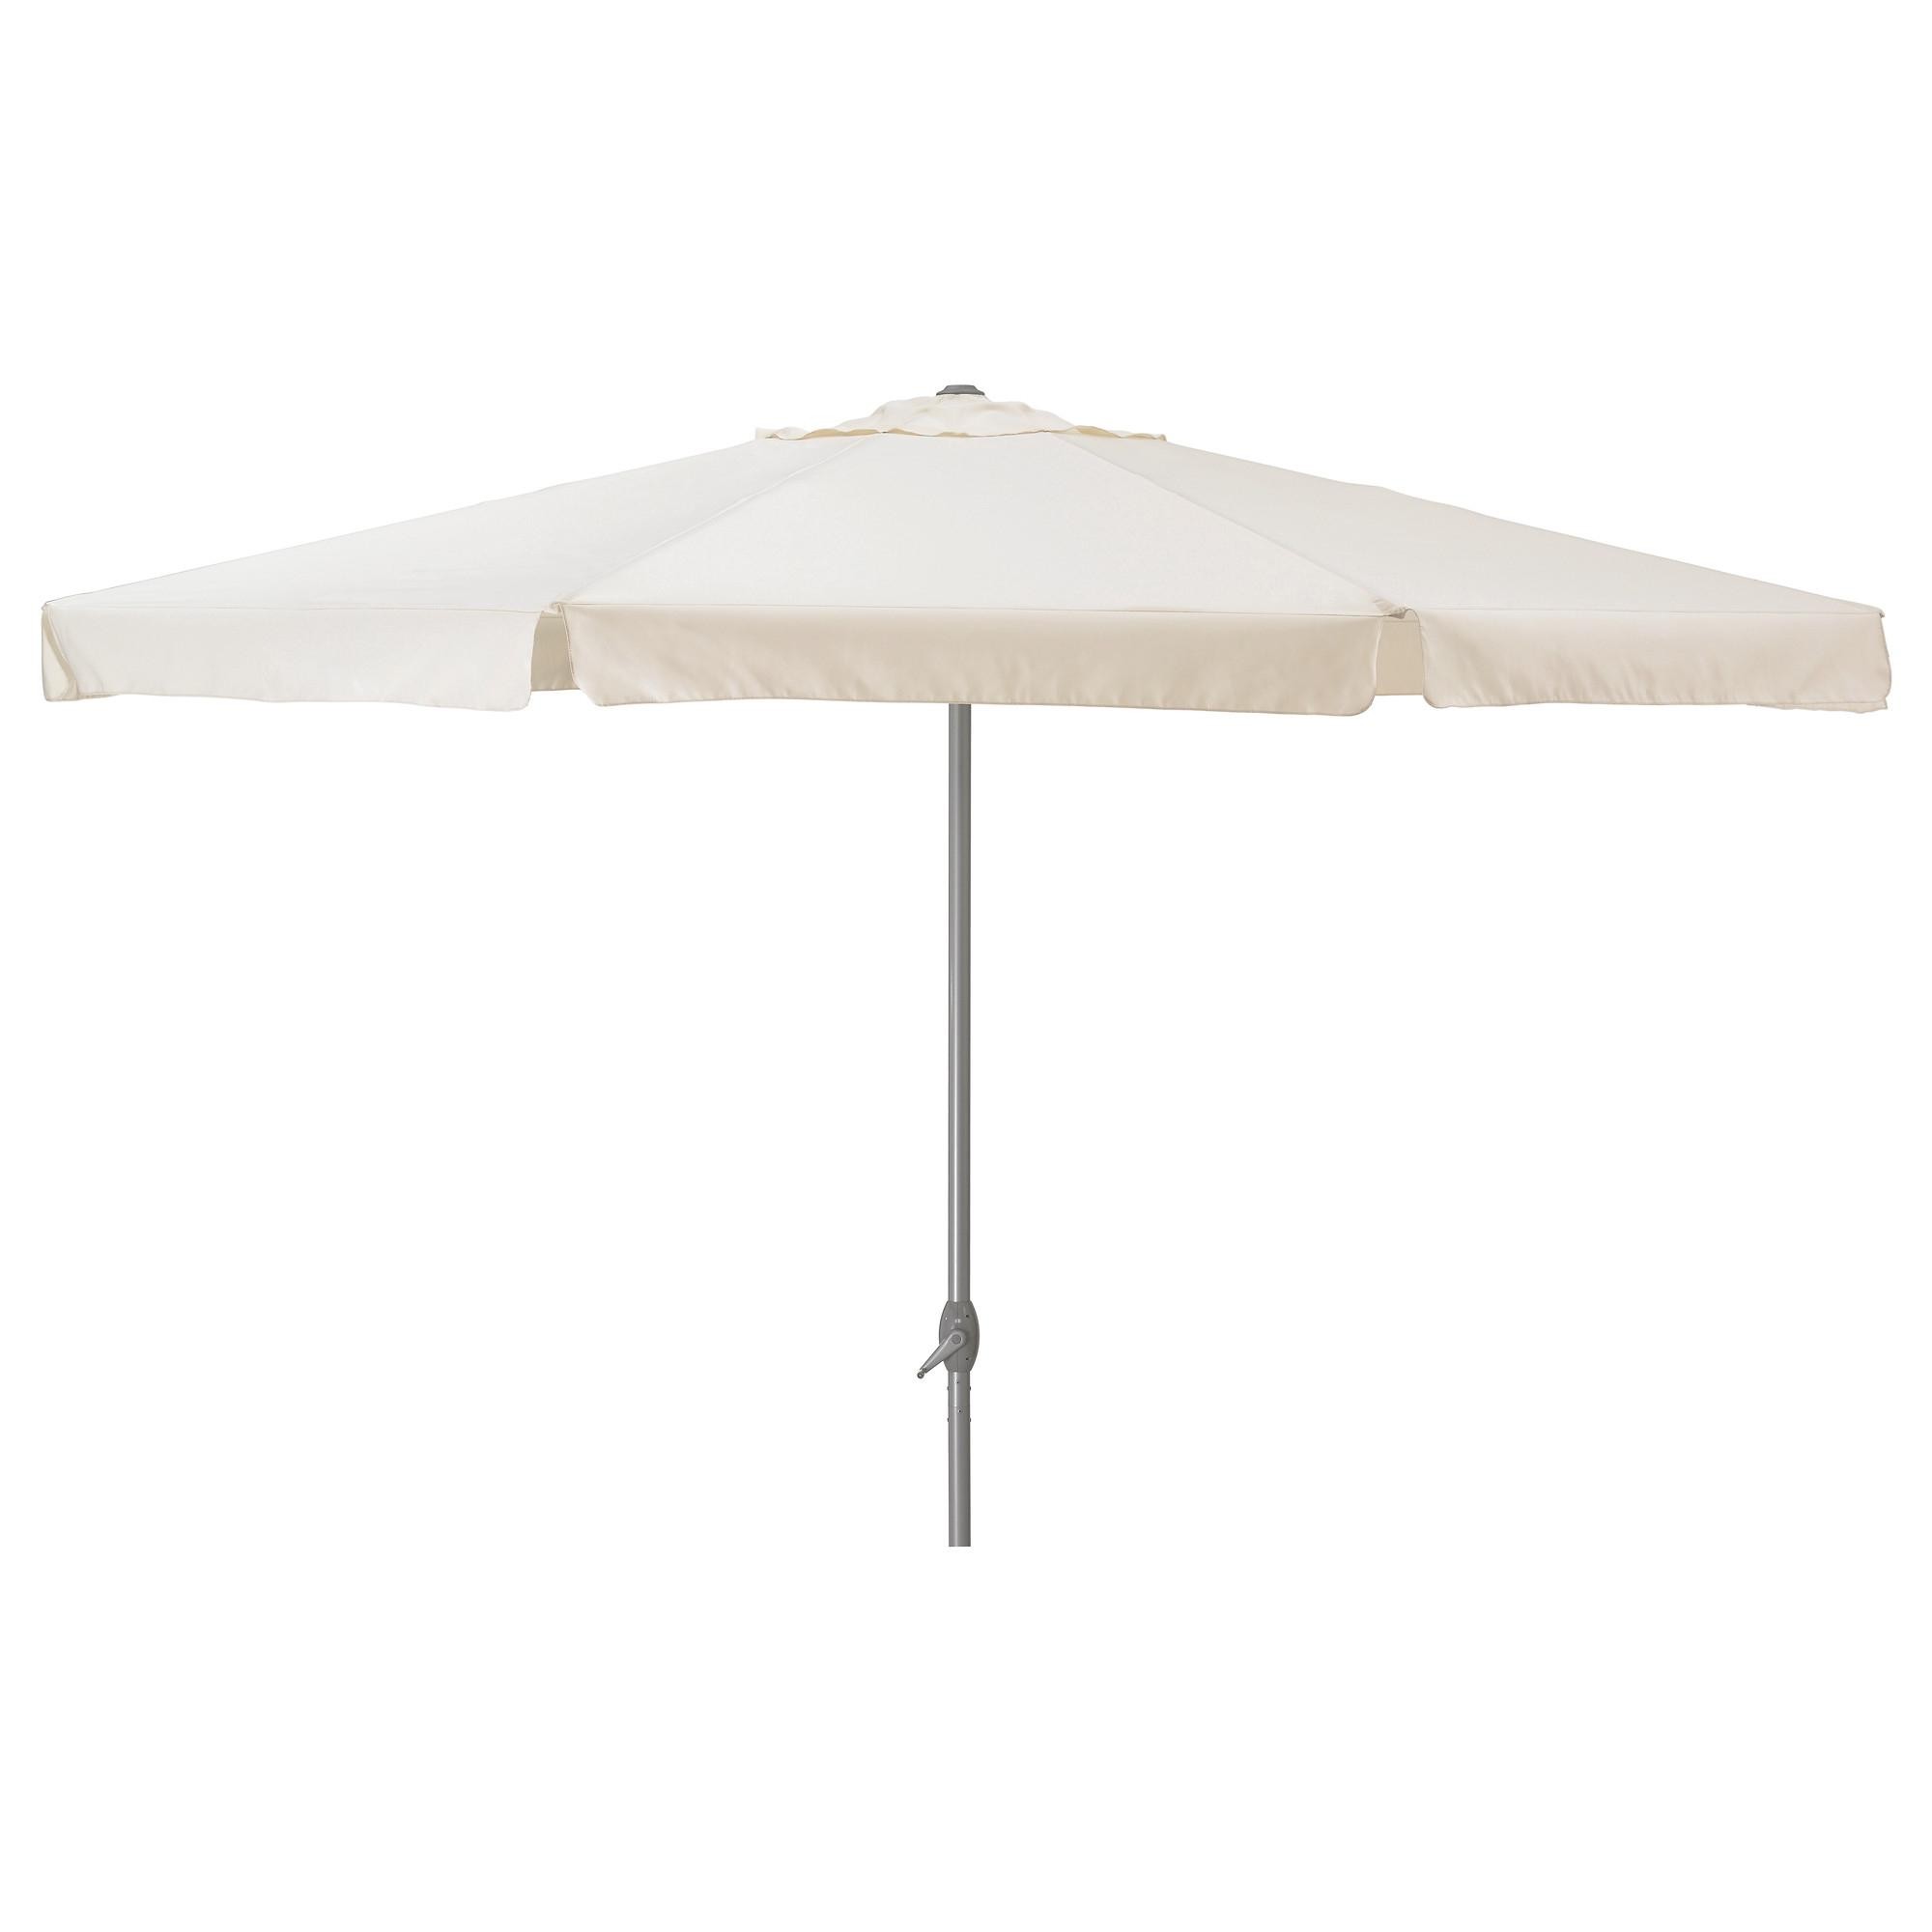 IKEA LJUSTERO зонт (202.603.13) - зображення 1